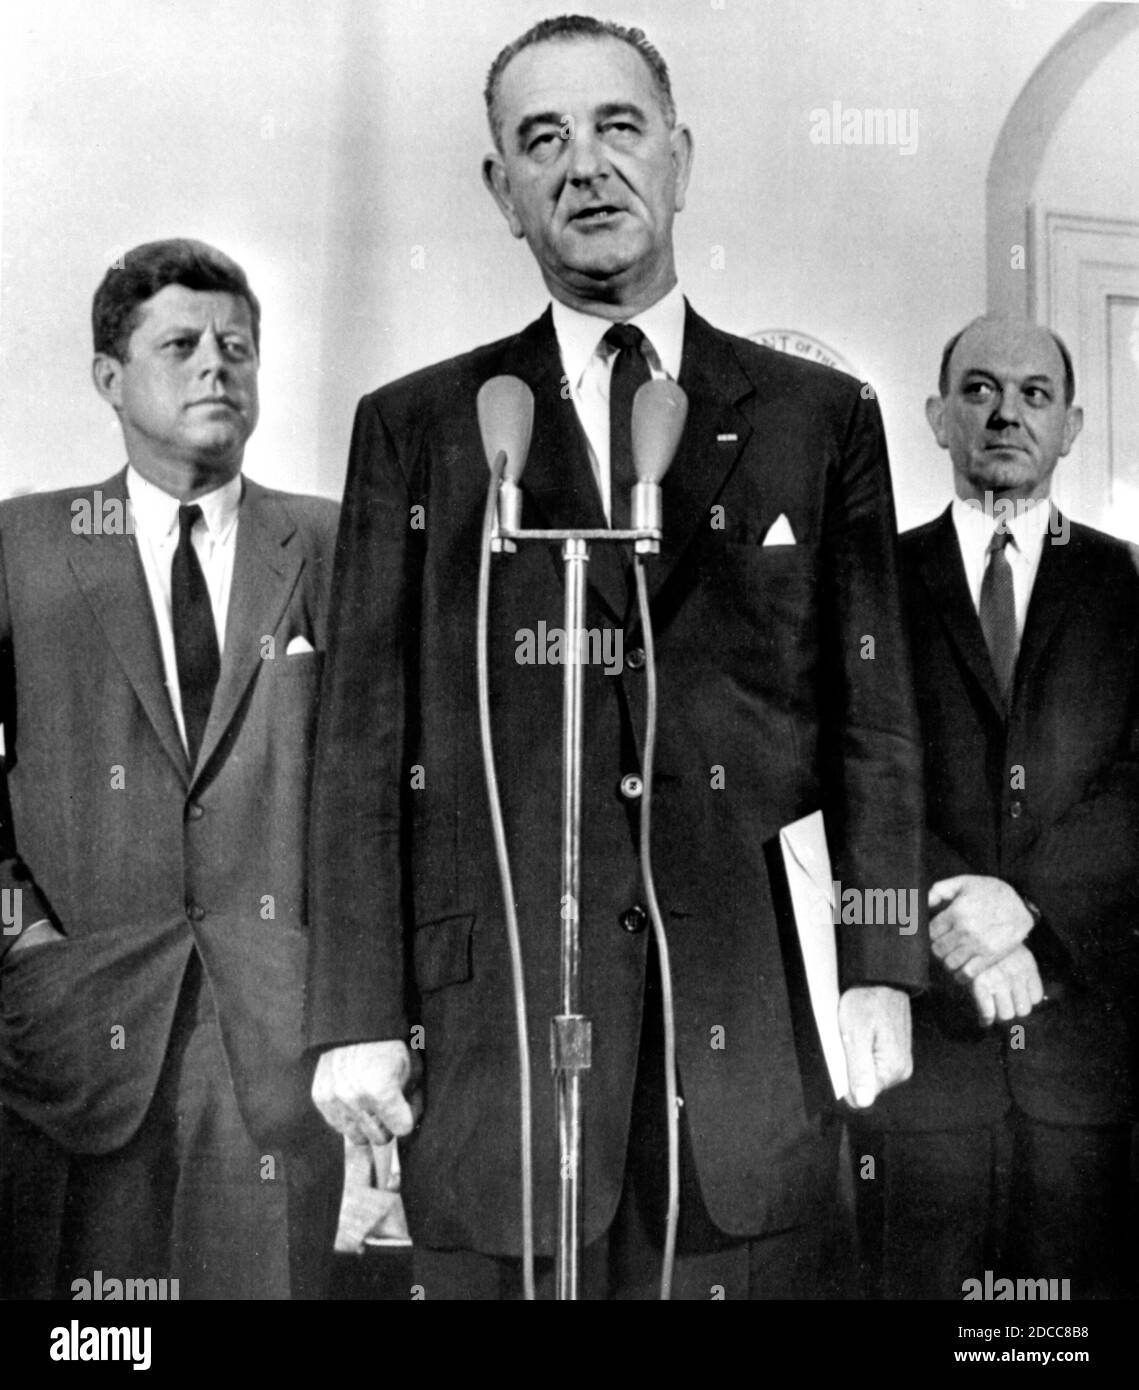 Flankiert von US-Präsident John F. Kennedy und Staatssekretär Dean Rusk berichtet US-Vizepräsident Lyndon B. Johnson nach seinem Wochenendbesuch in Berlin im August 1961, auf dem Höhepunkt der Berliner Krise und der Errichtung der Berliner Mauer, der Presse. Stockfoto